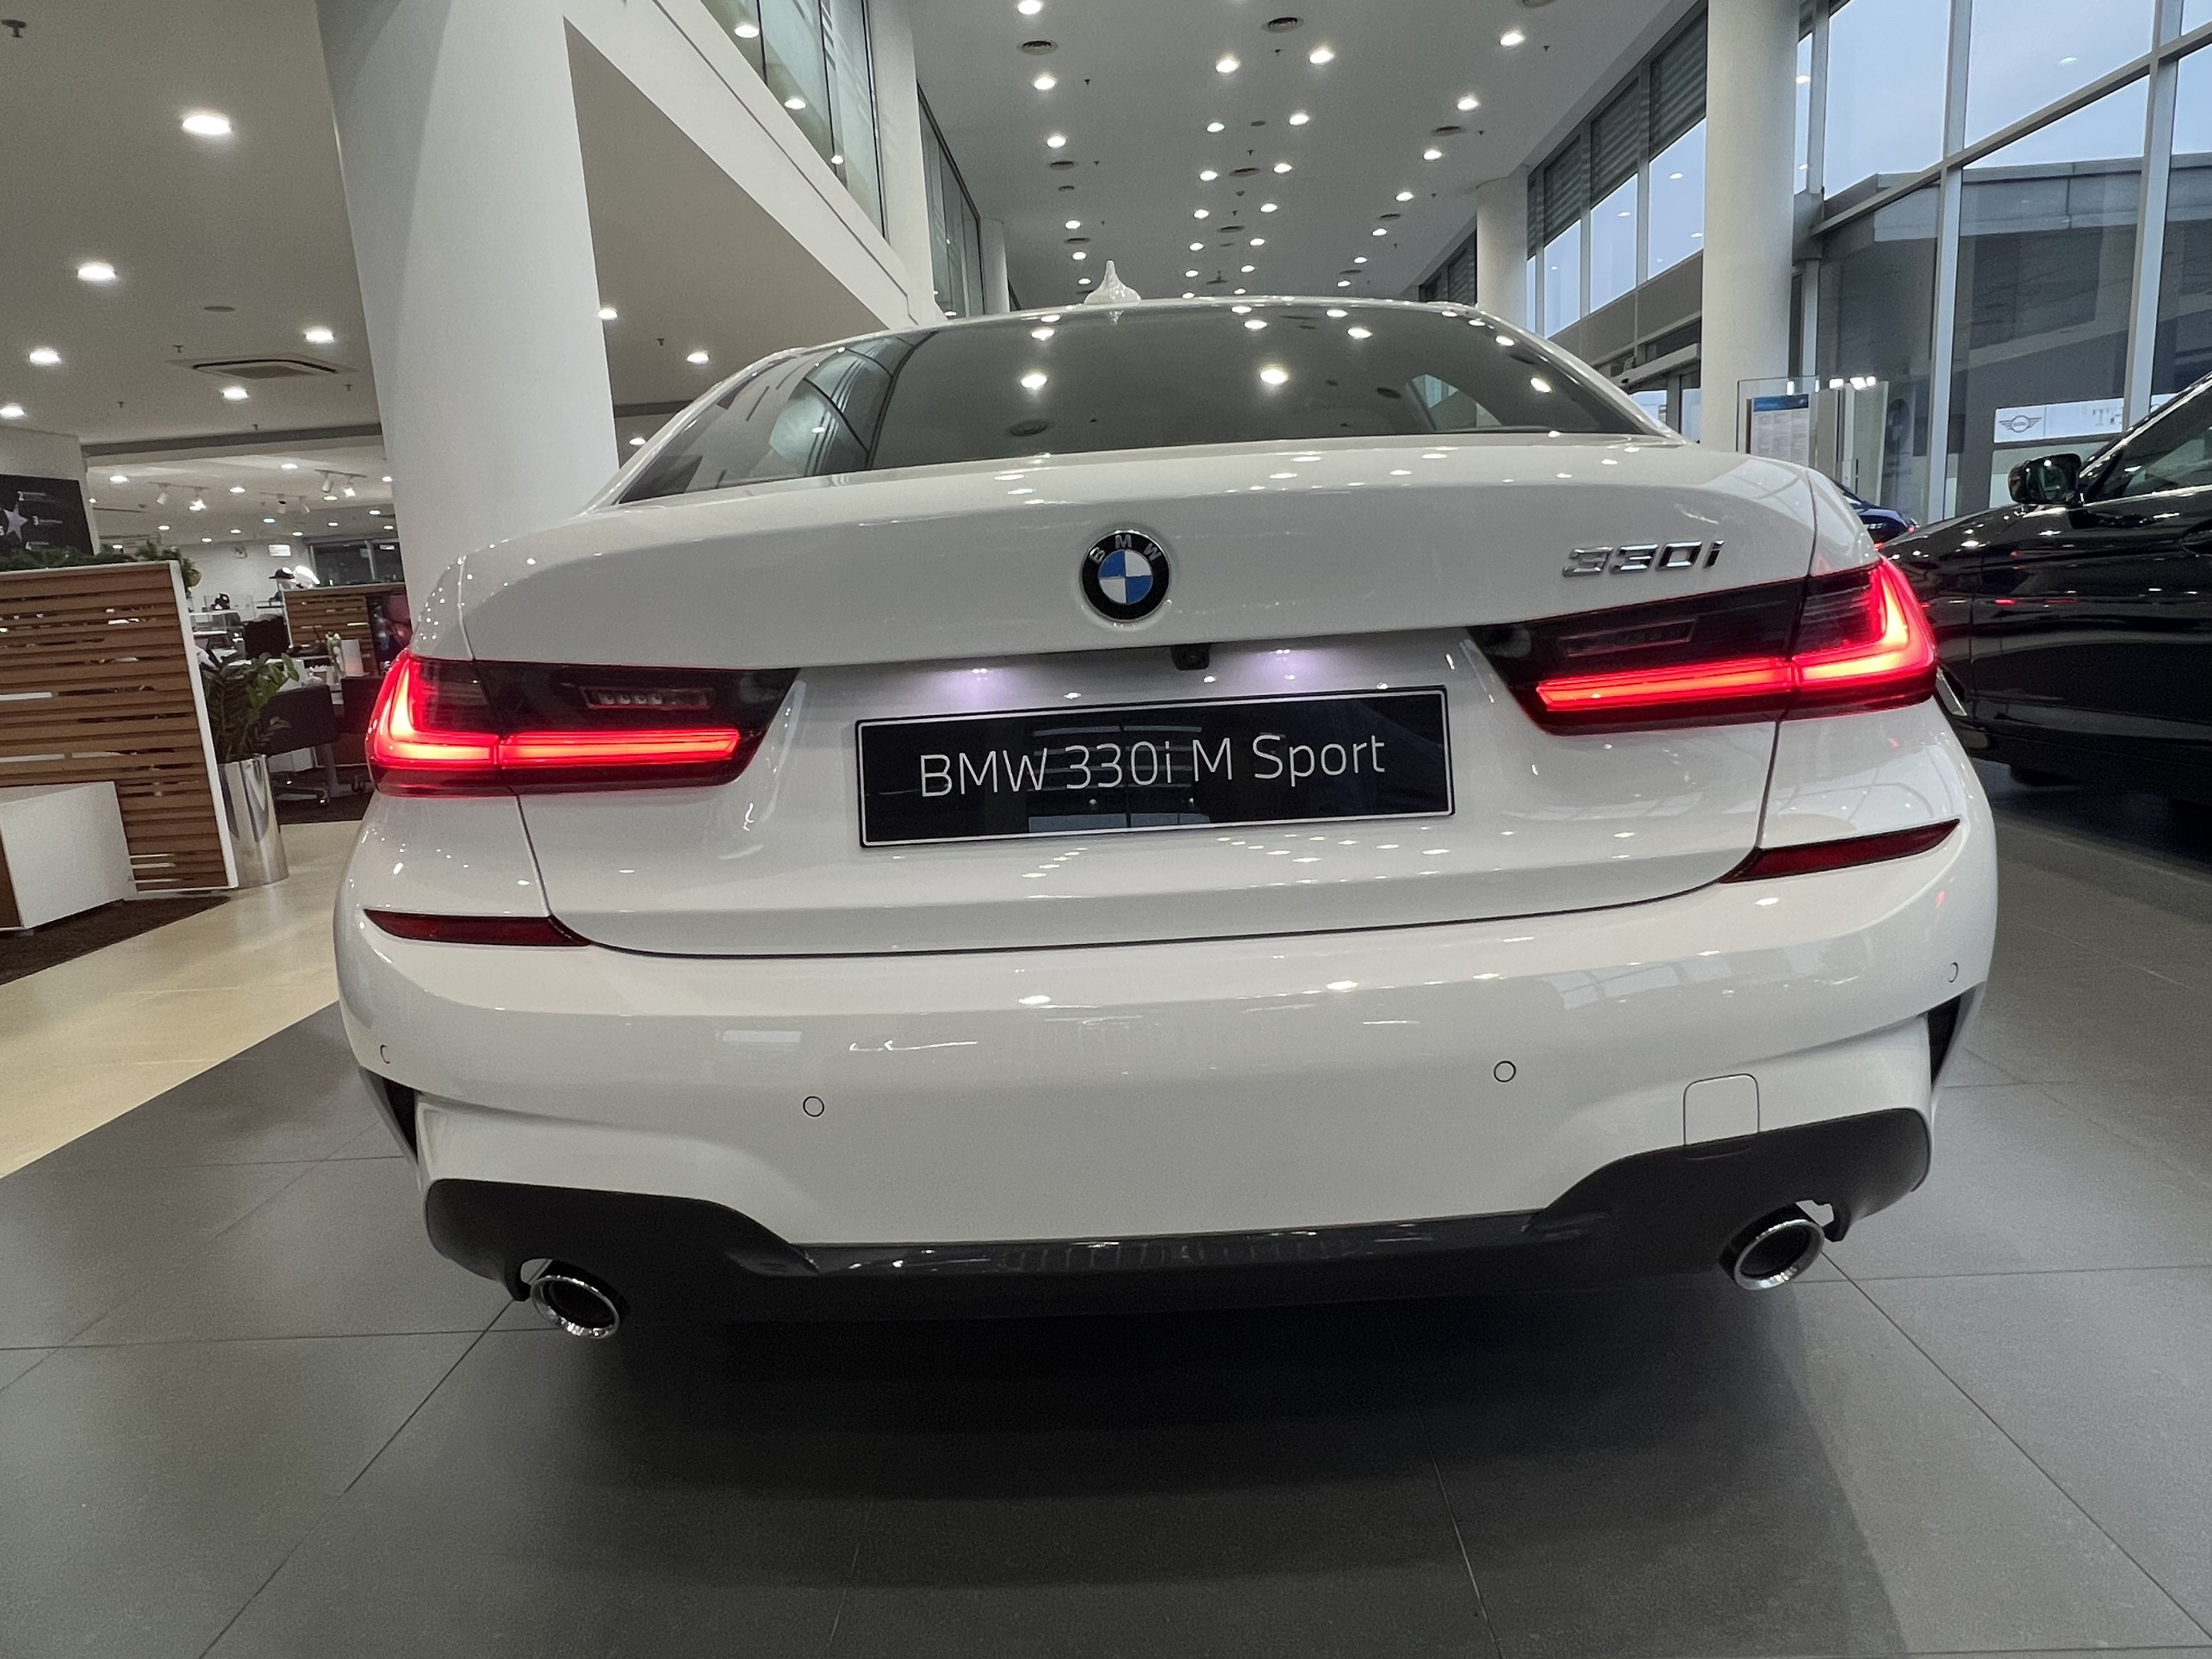 Chủ xe chi 1 tỷ đồng nâng cấp BMW 330i M Sport tại Sài Gòn Riêng bộ mâm và  phanh giá gần 500 triệu